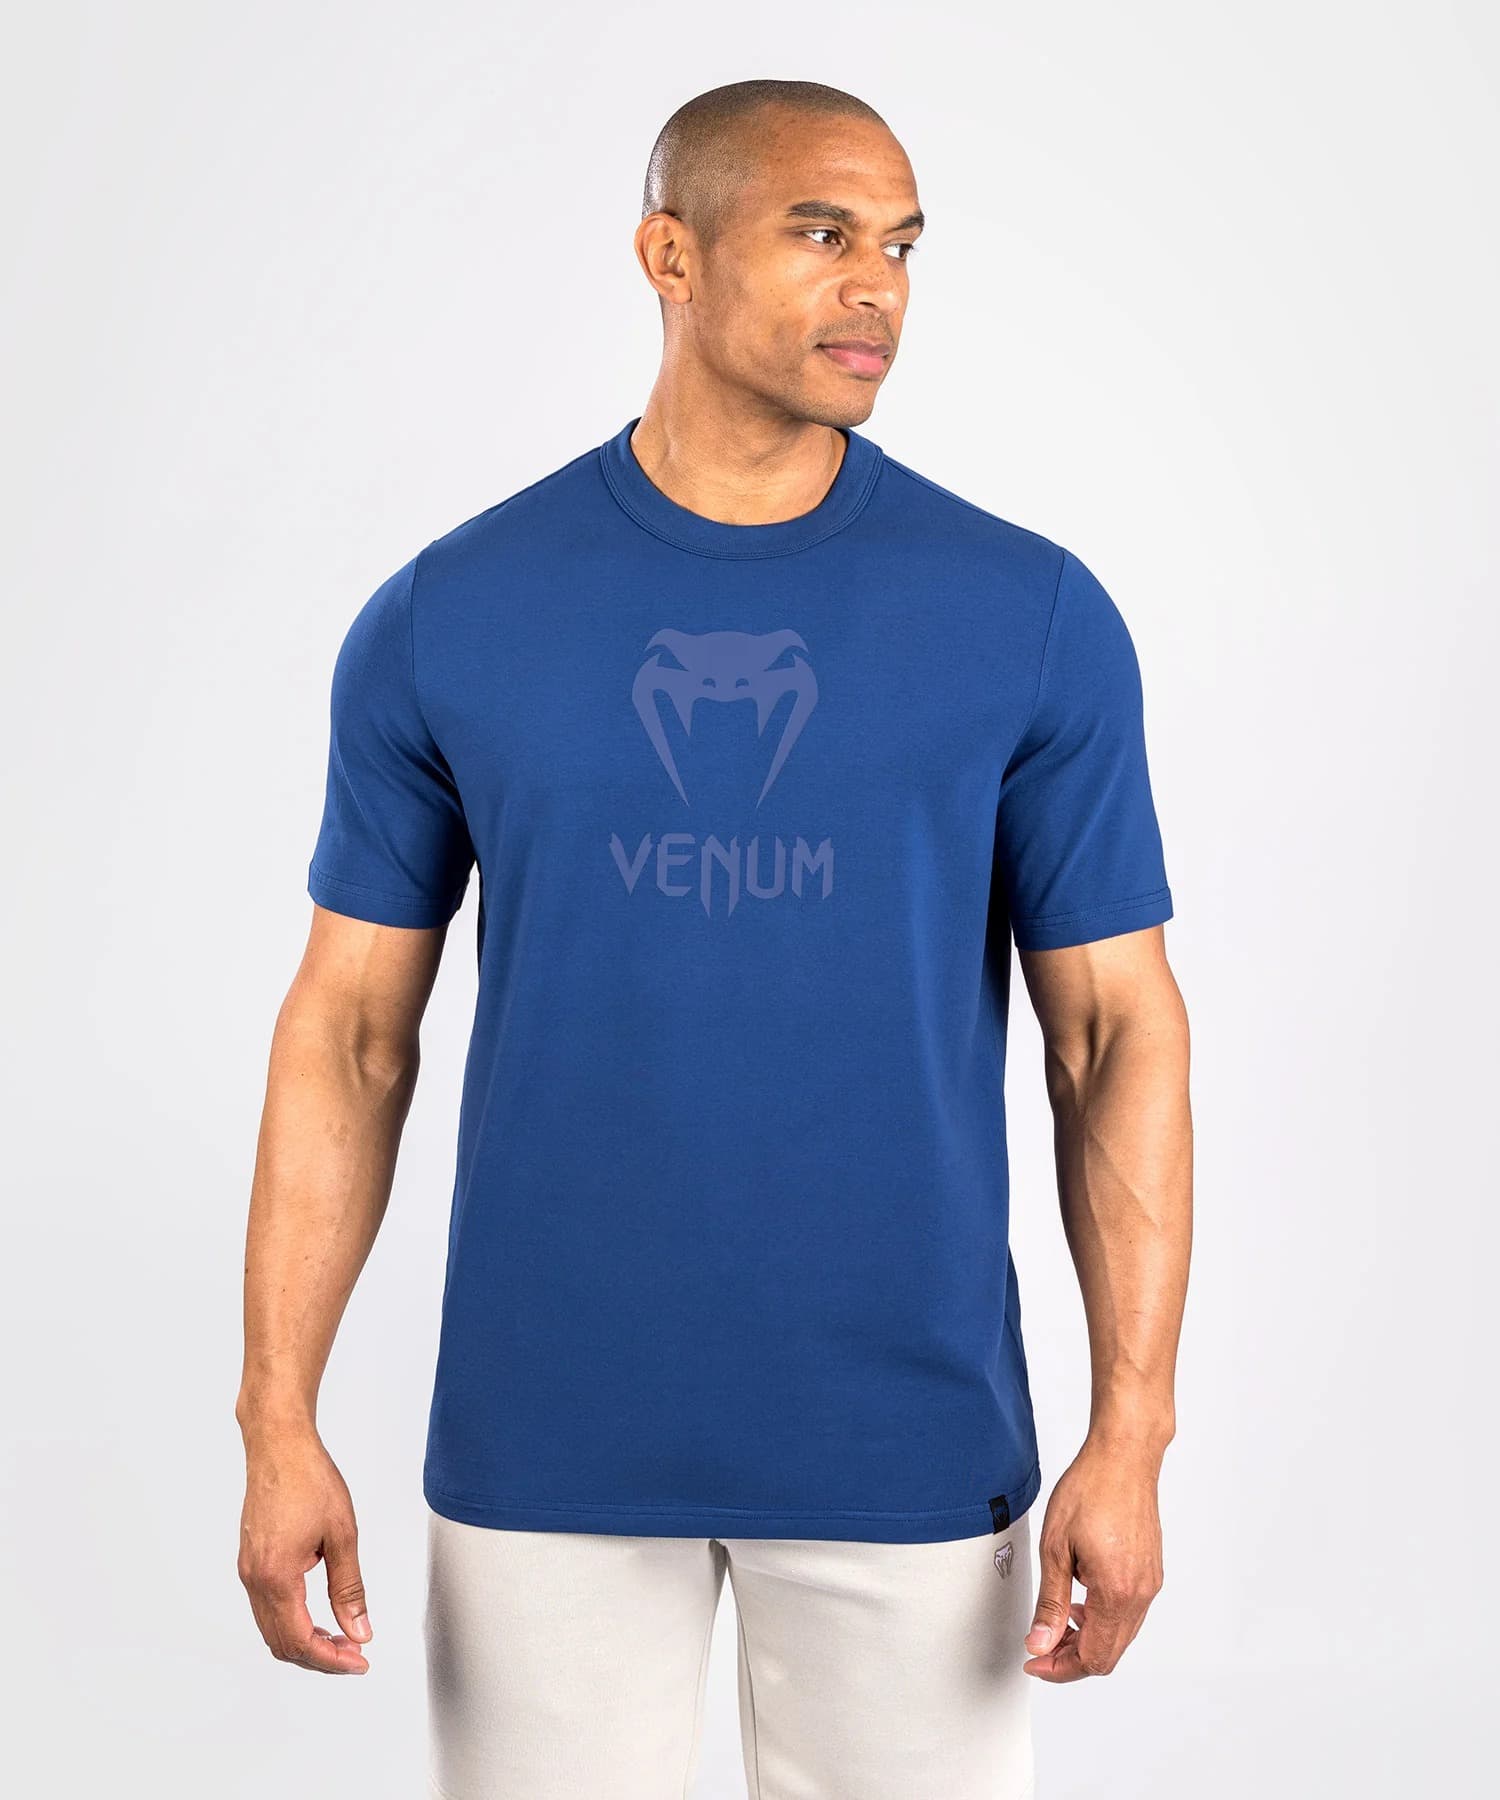 https://www.estilomma.pt/images/productos/camiseta-venum-classic-azul-marino-6-6265.jpeg